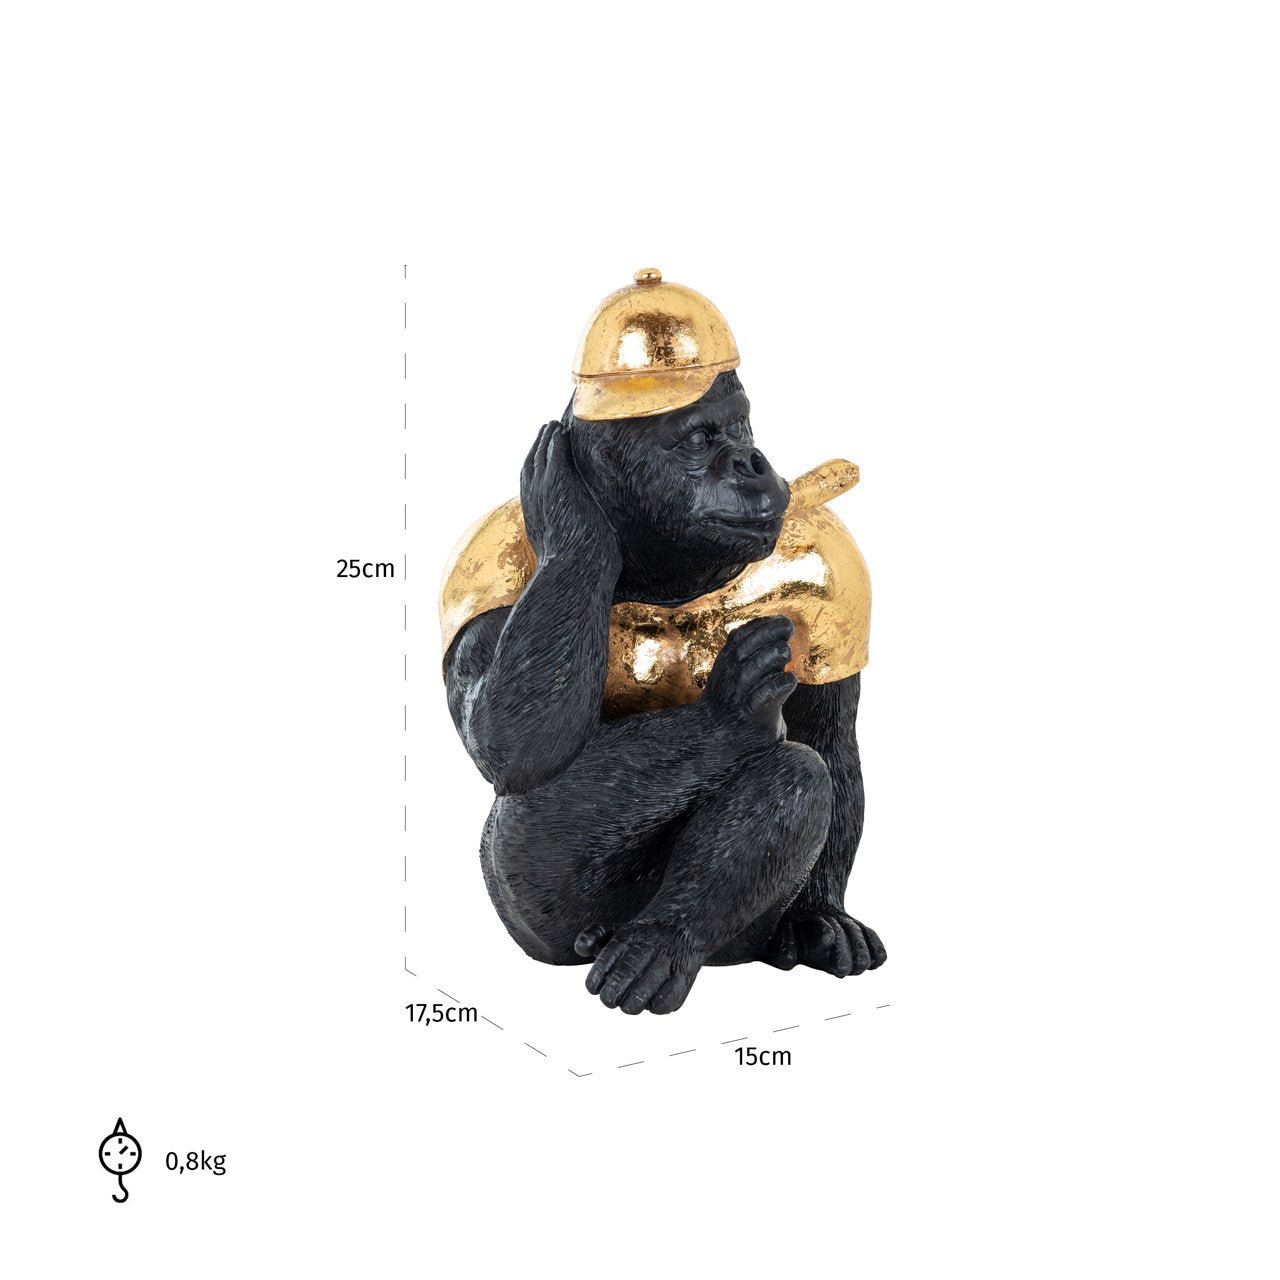 Maataanduiding Gorilla met gouden pet -decoratie beelden voor in huis van Richond Interiors